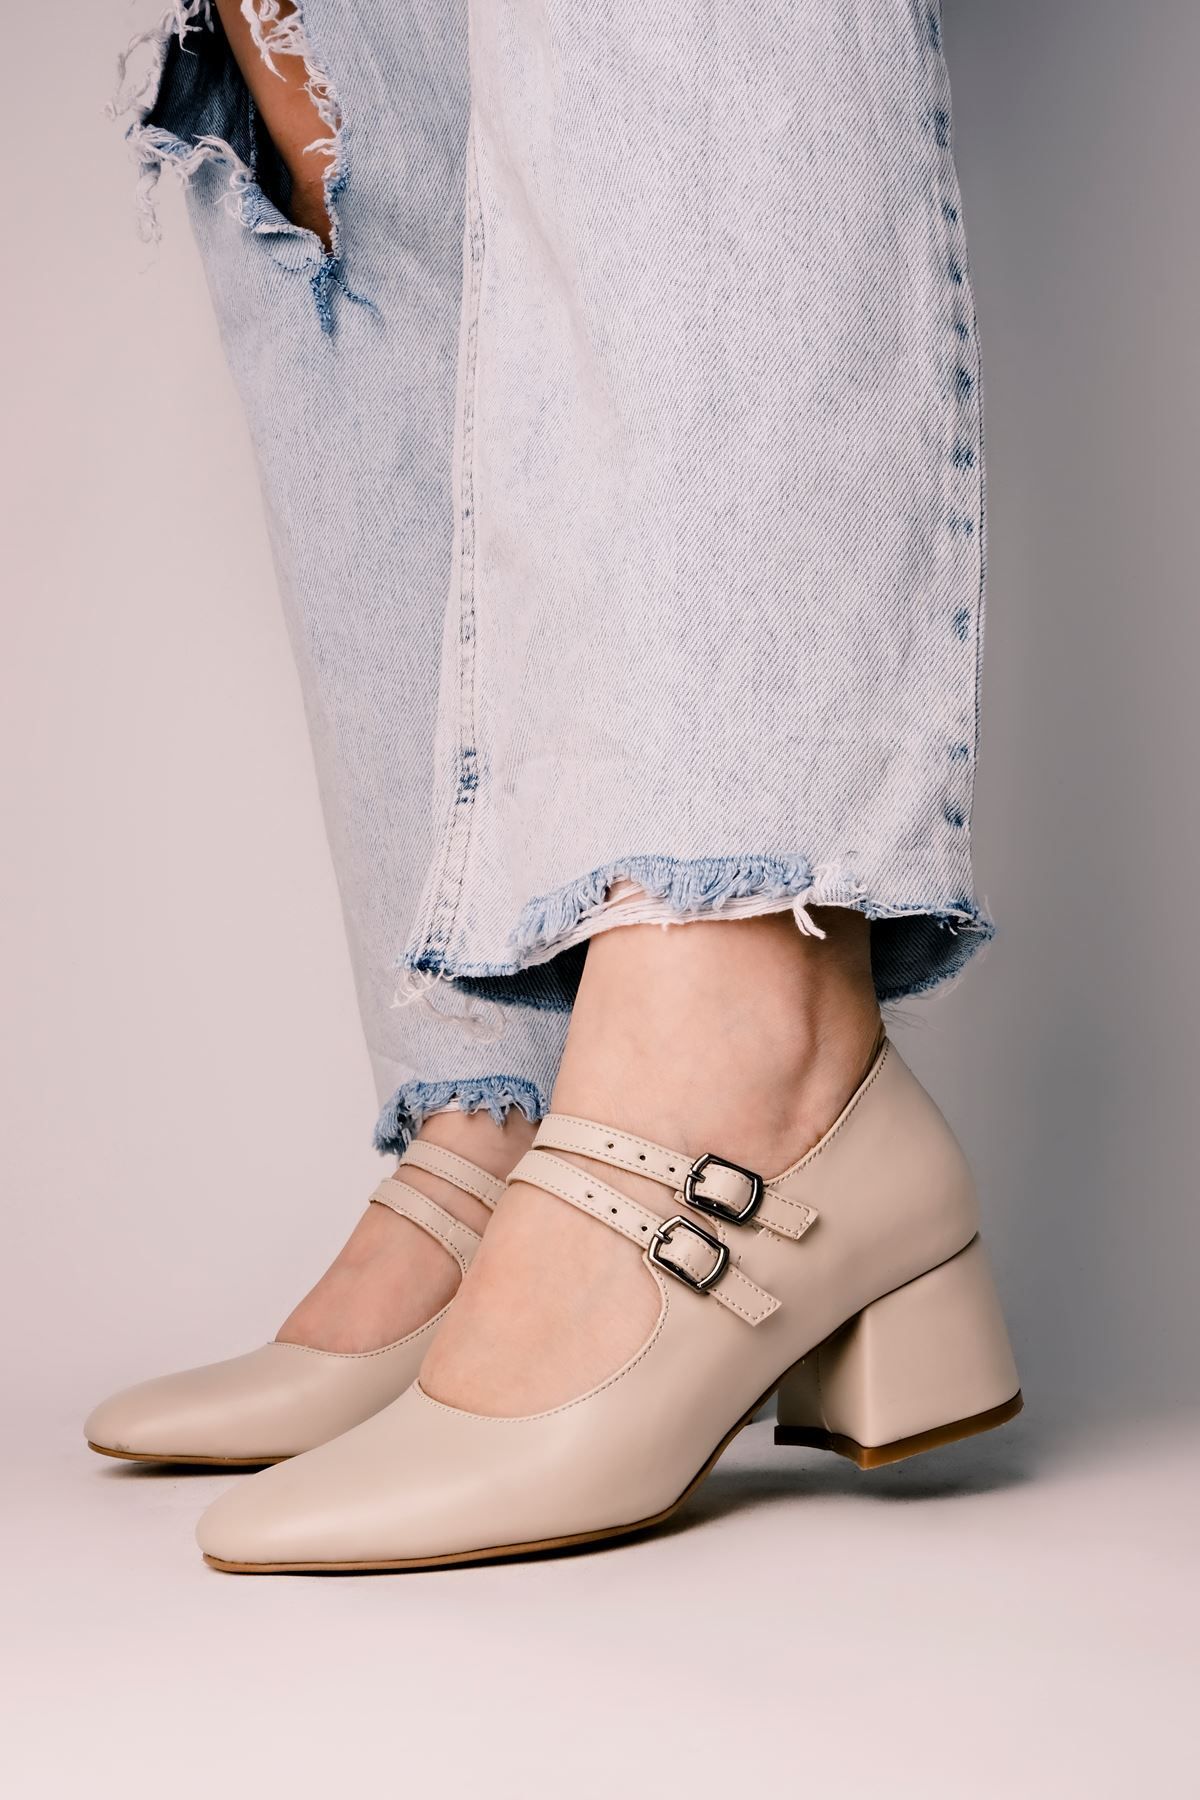 LAL SHOES & BAGS Joanne Kadın Topuklu Ayakkabı İki Tokalı Vintage-Krem